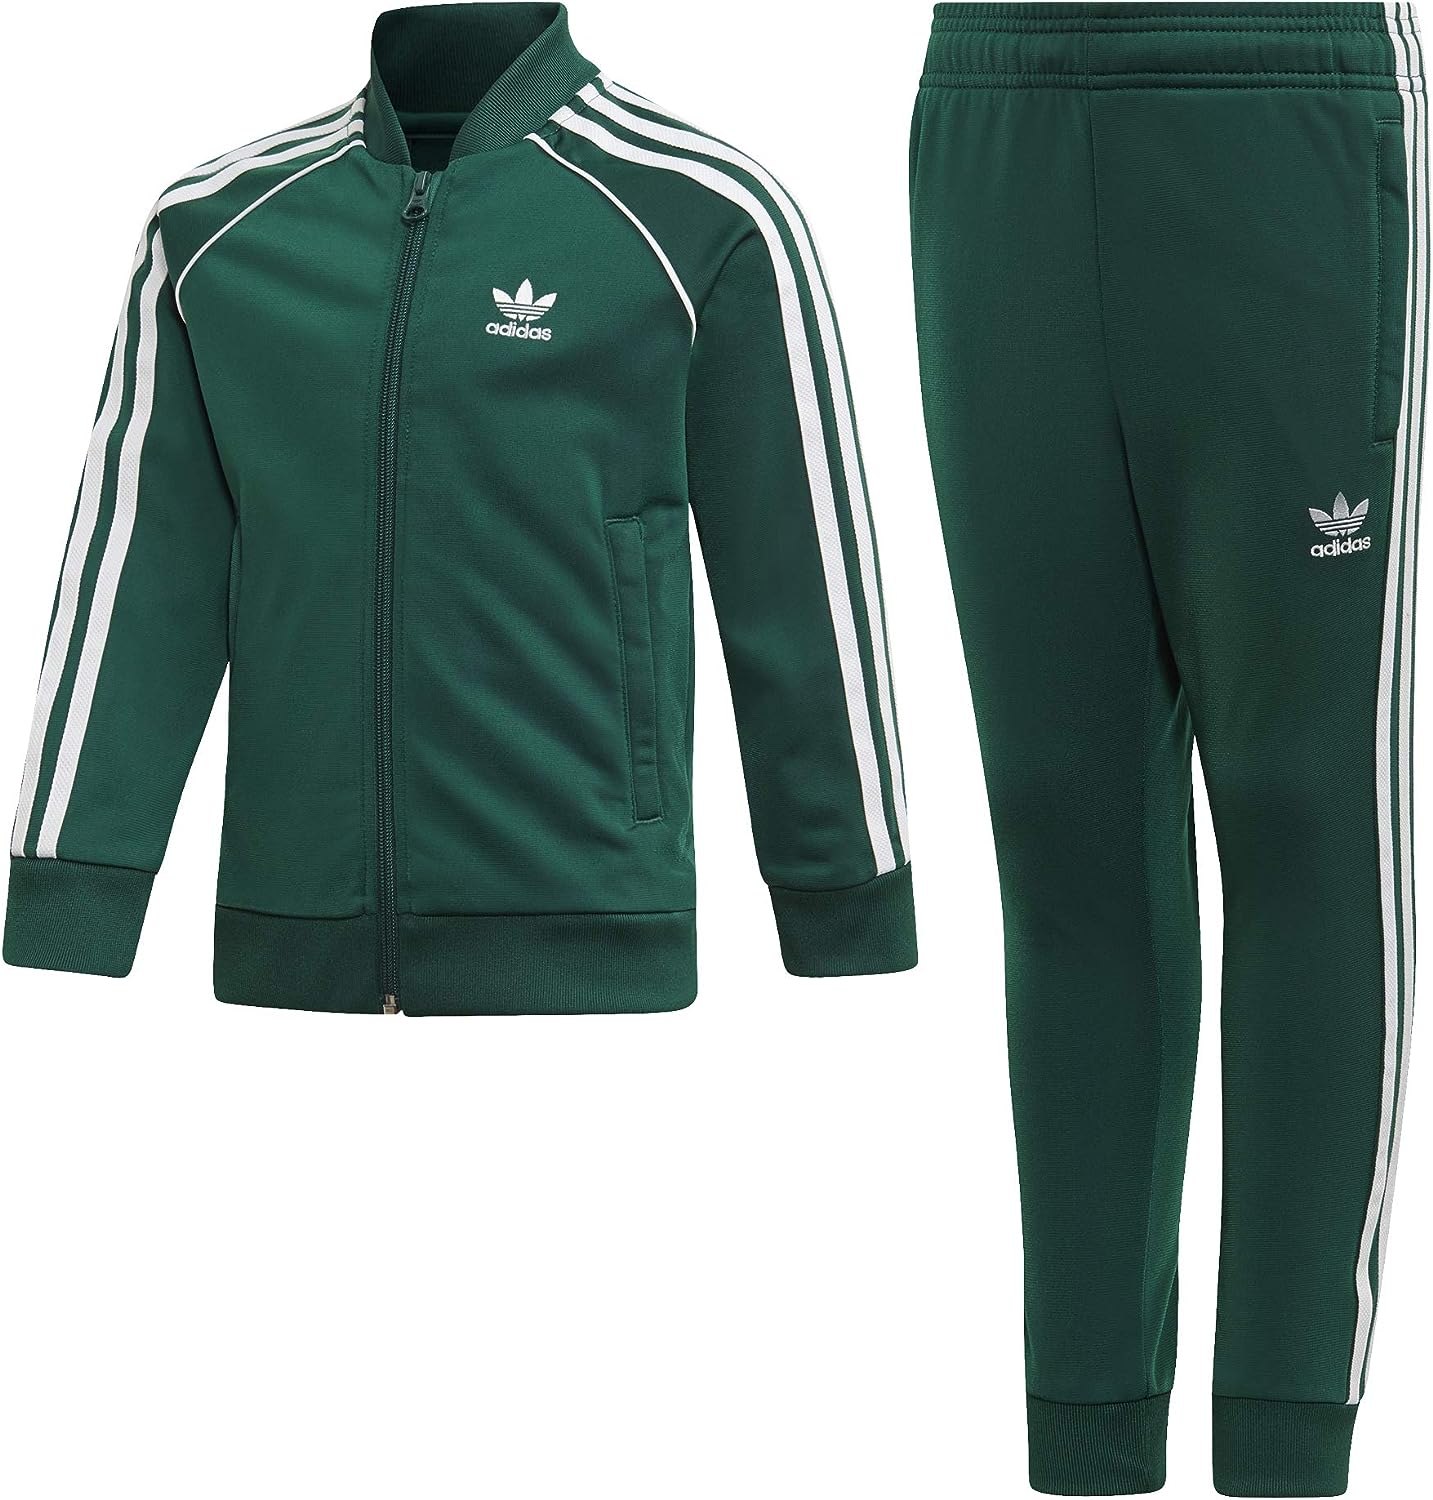 Адидас зеленый спортивный. Адидас ориджинал спортивный костюм зеленый. Adidas SST зеленый костюм. Спортивный костюм адидас ориджинал мужской зеленый. Adidas Originals костюм мужской зеленый.